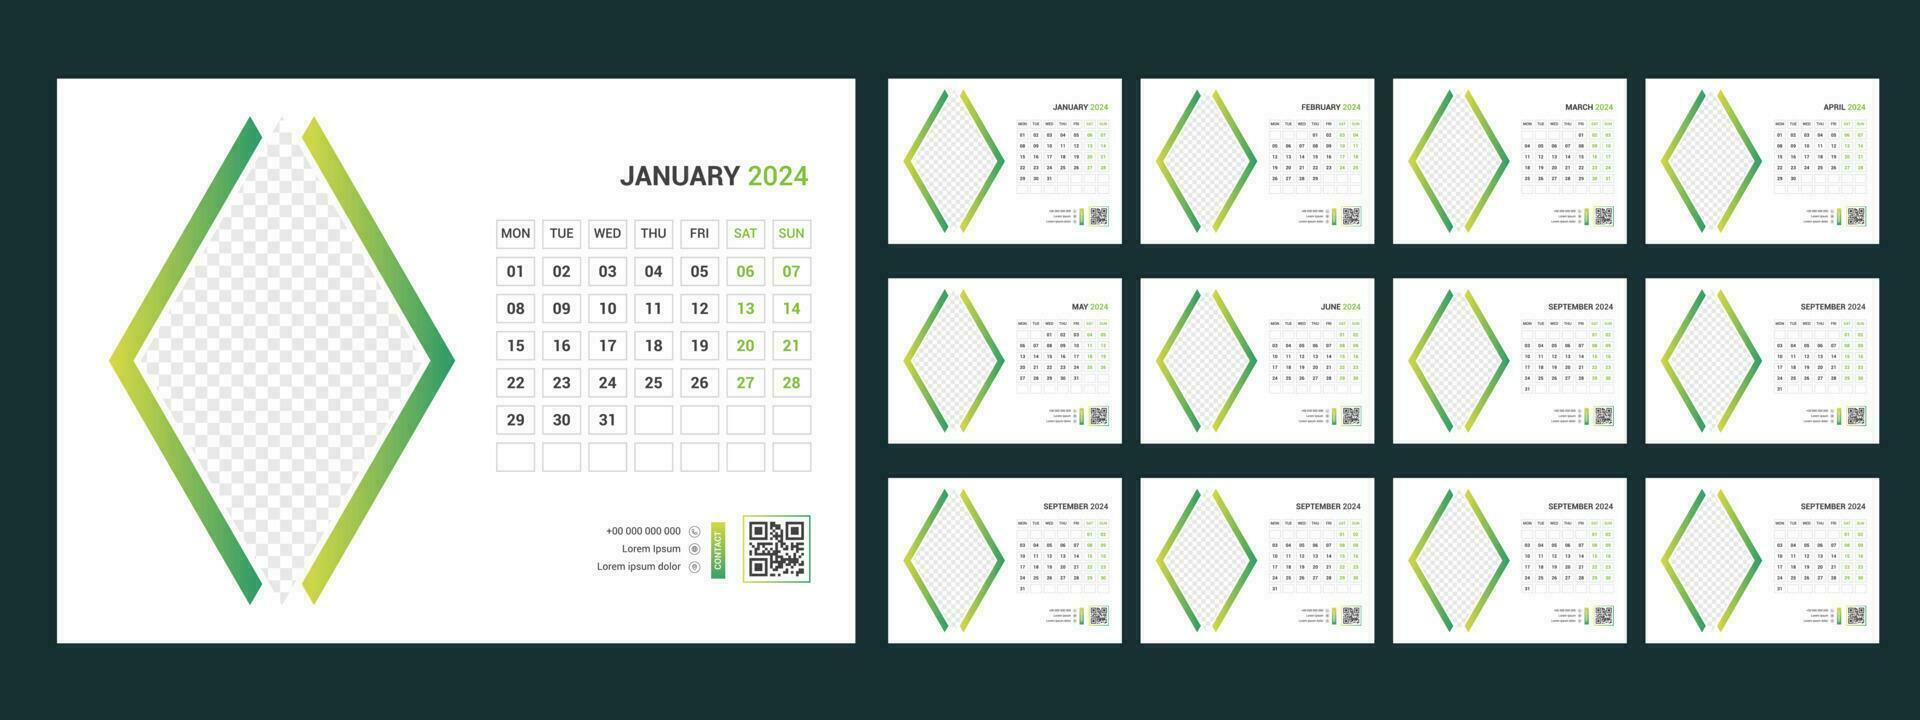 Kalender 2024 Planer korporativ Vorlage Design Satz. Woche beginnt auf montag.vorlage zum jährlich Kalender 2024 vektor